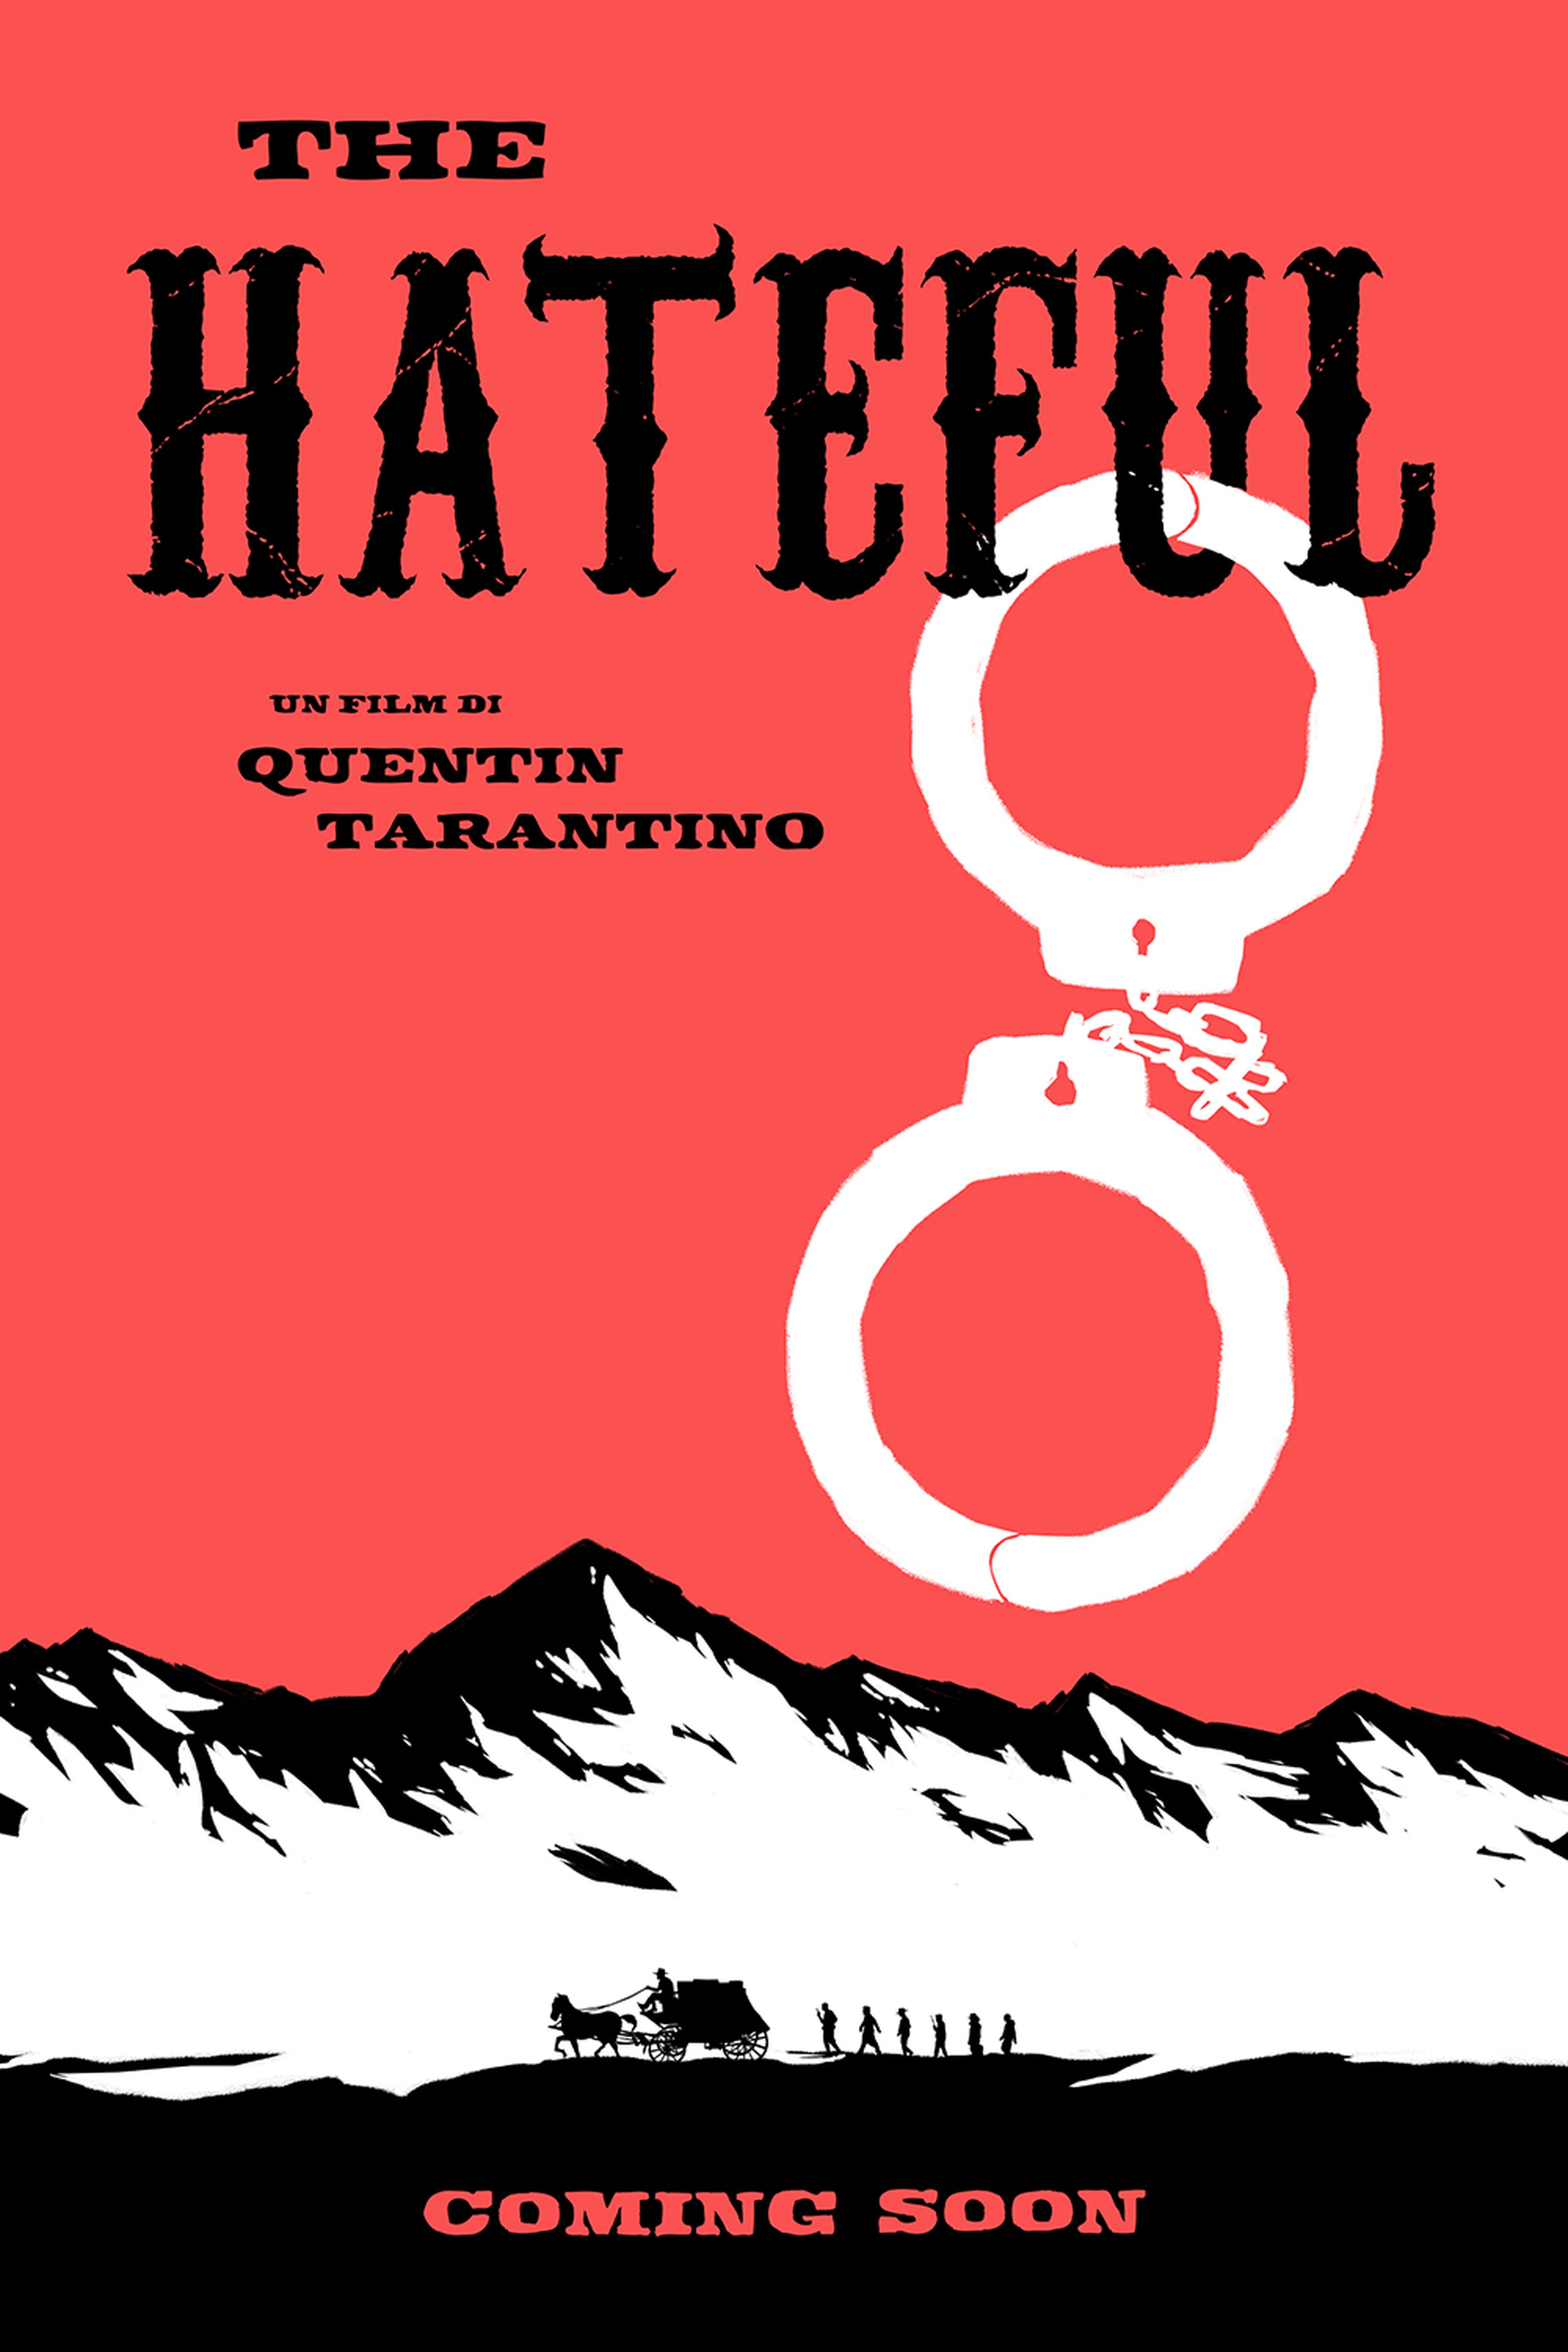 Tarantino desvela el reparto de The Hateful Eight y la sinopsis de la cinta